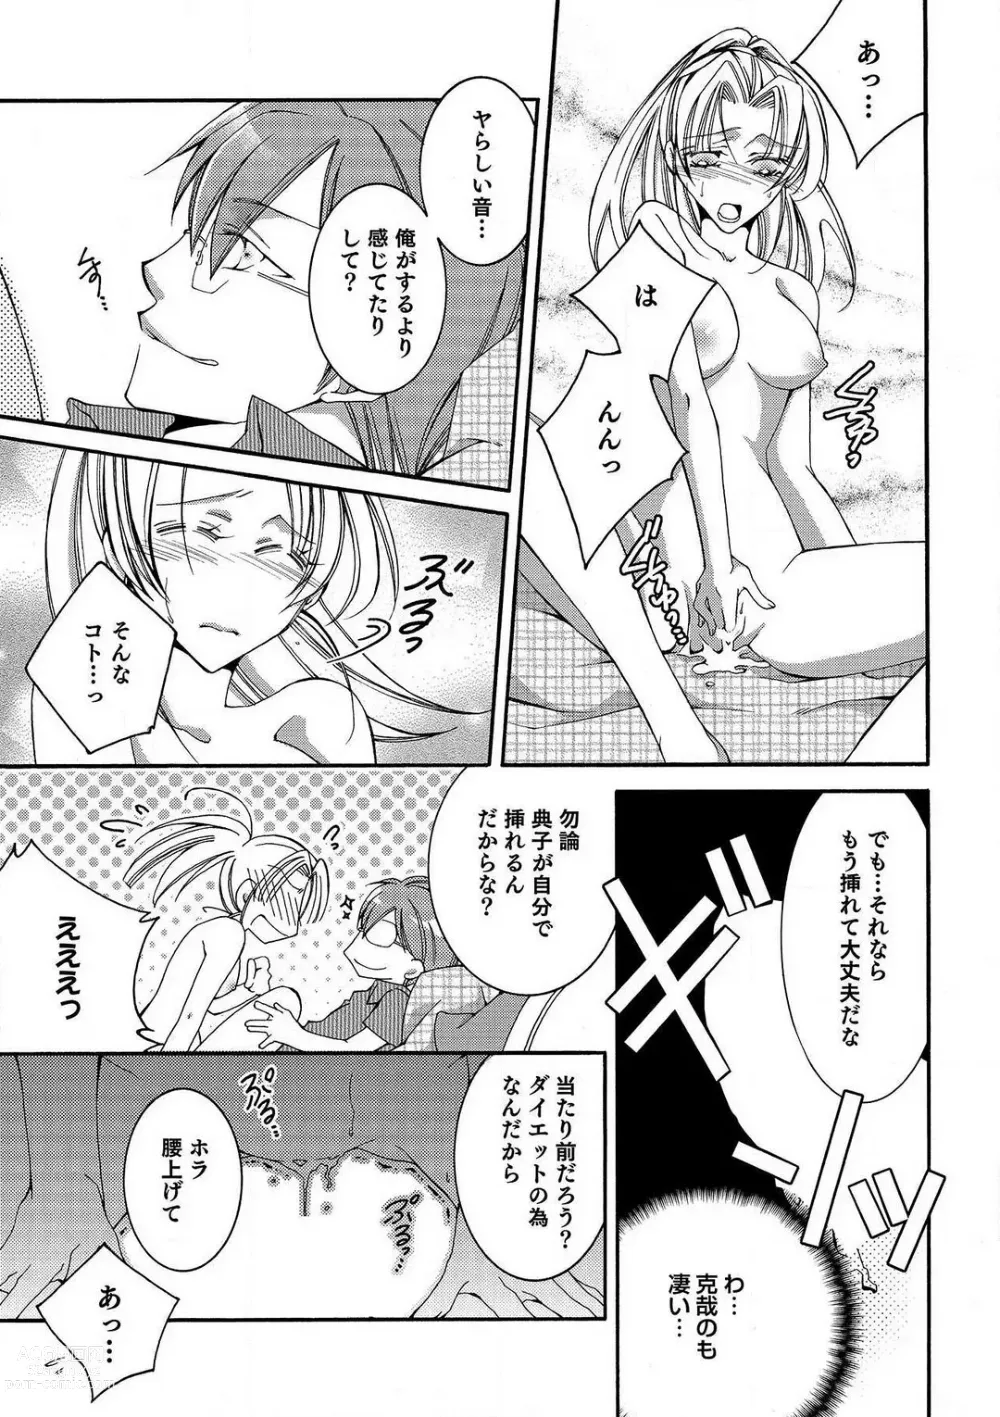 Page 16 of manga LOVE×PLAY 1-4